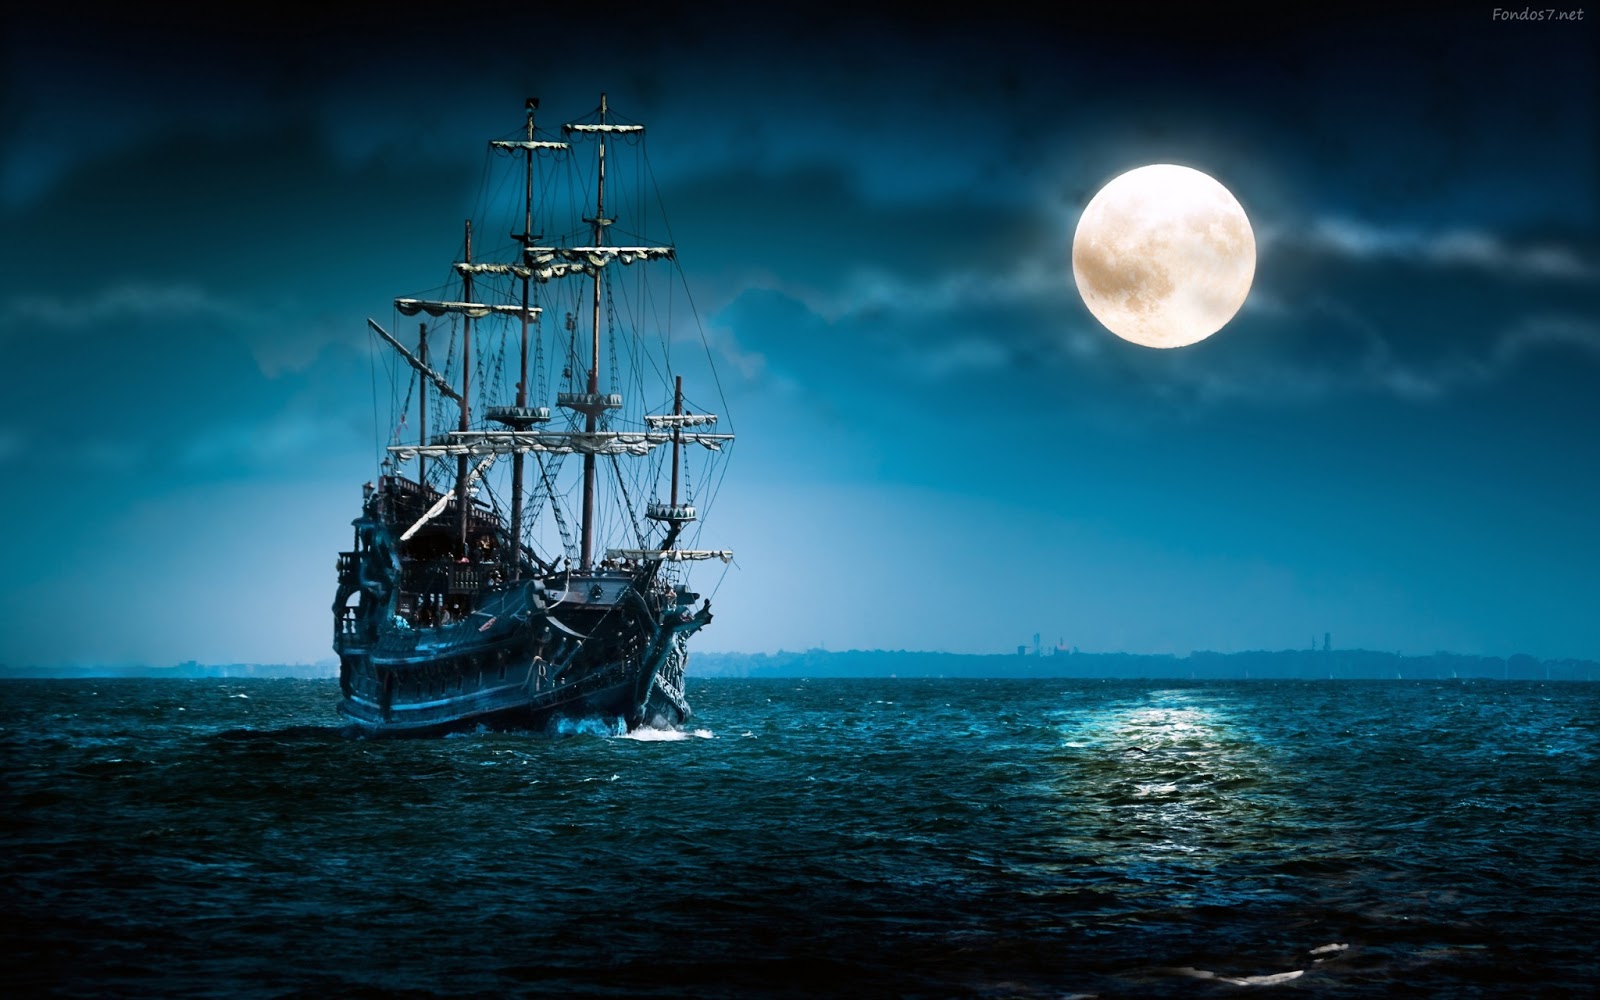 barco-pirata-y-luna-llena-